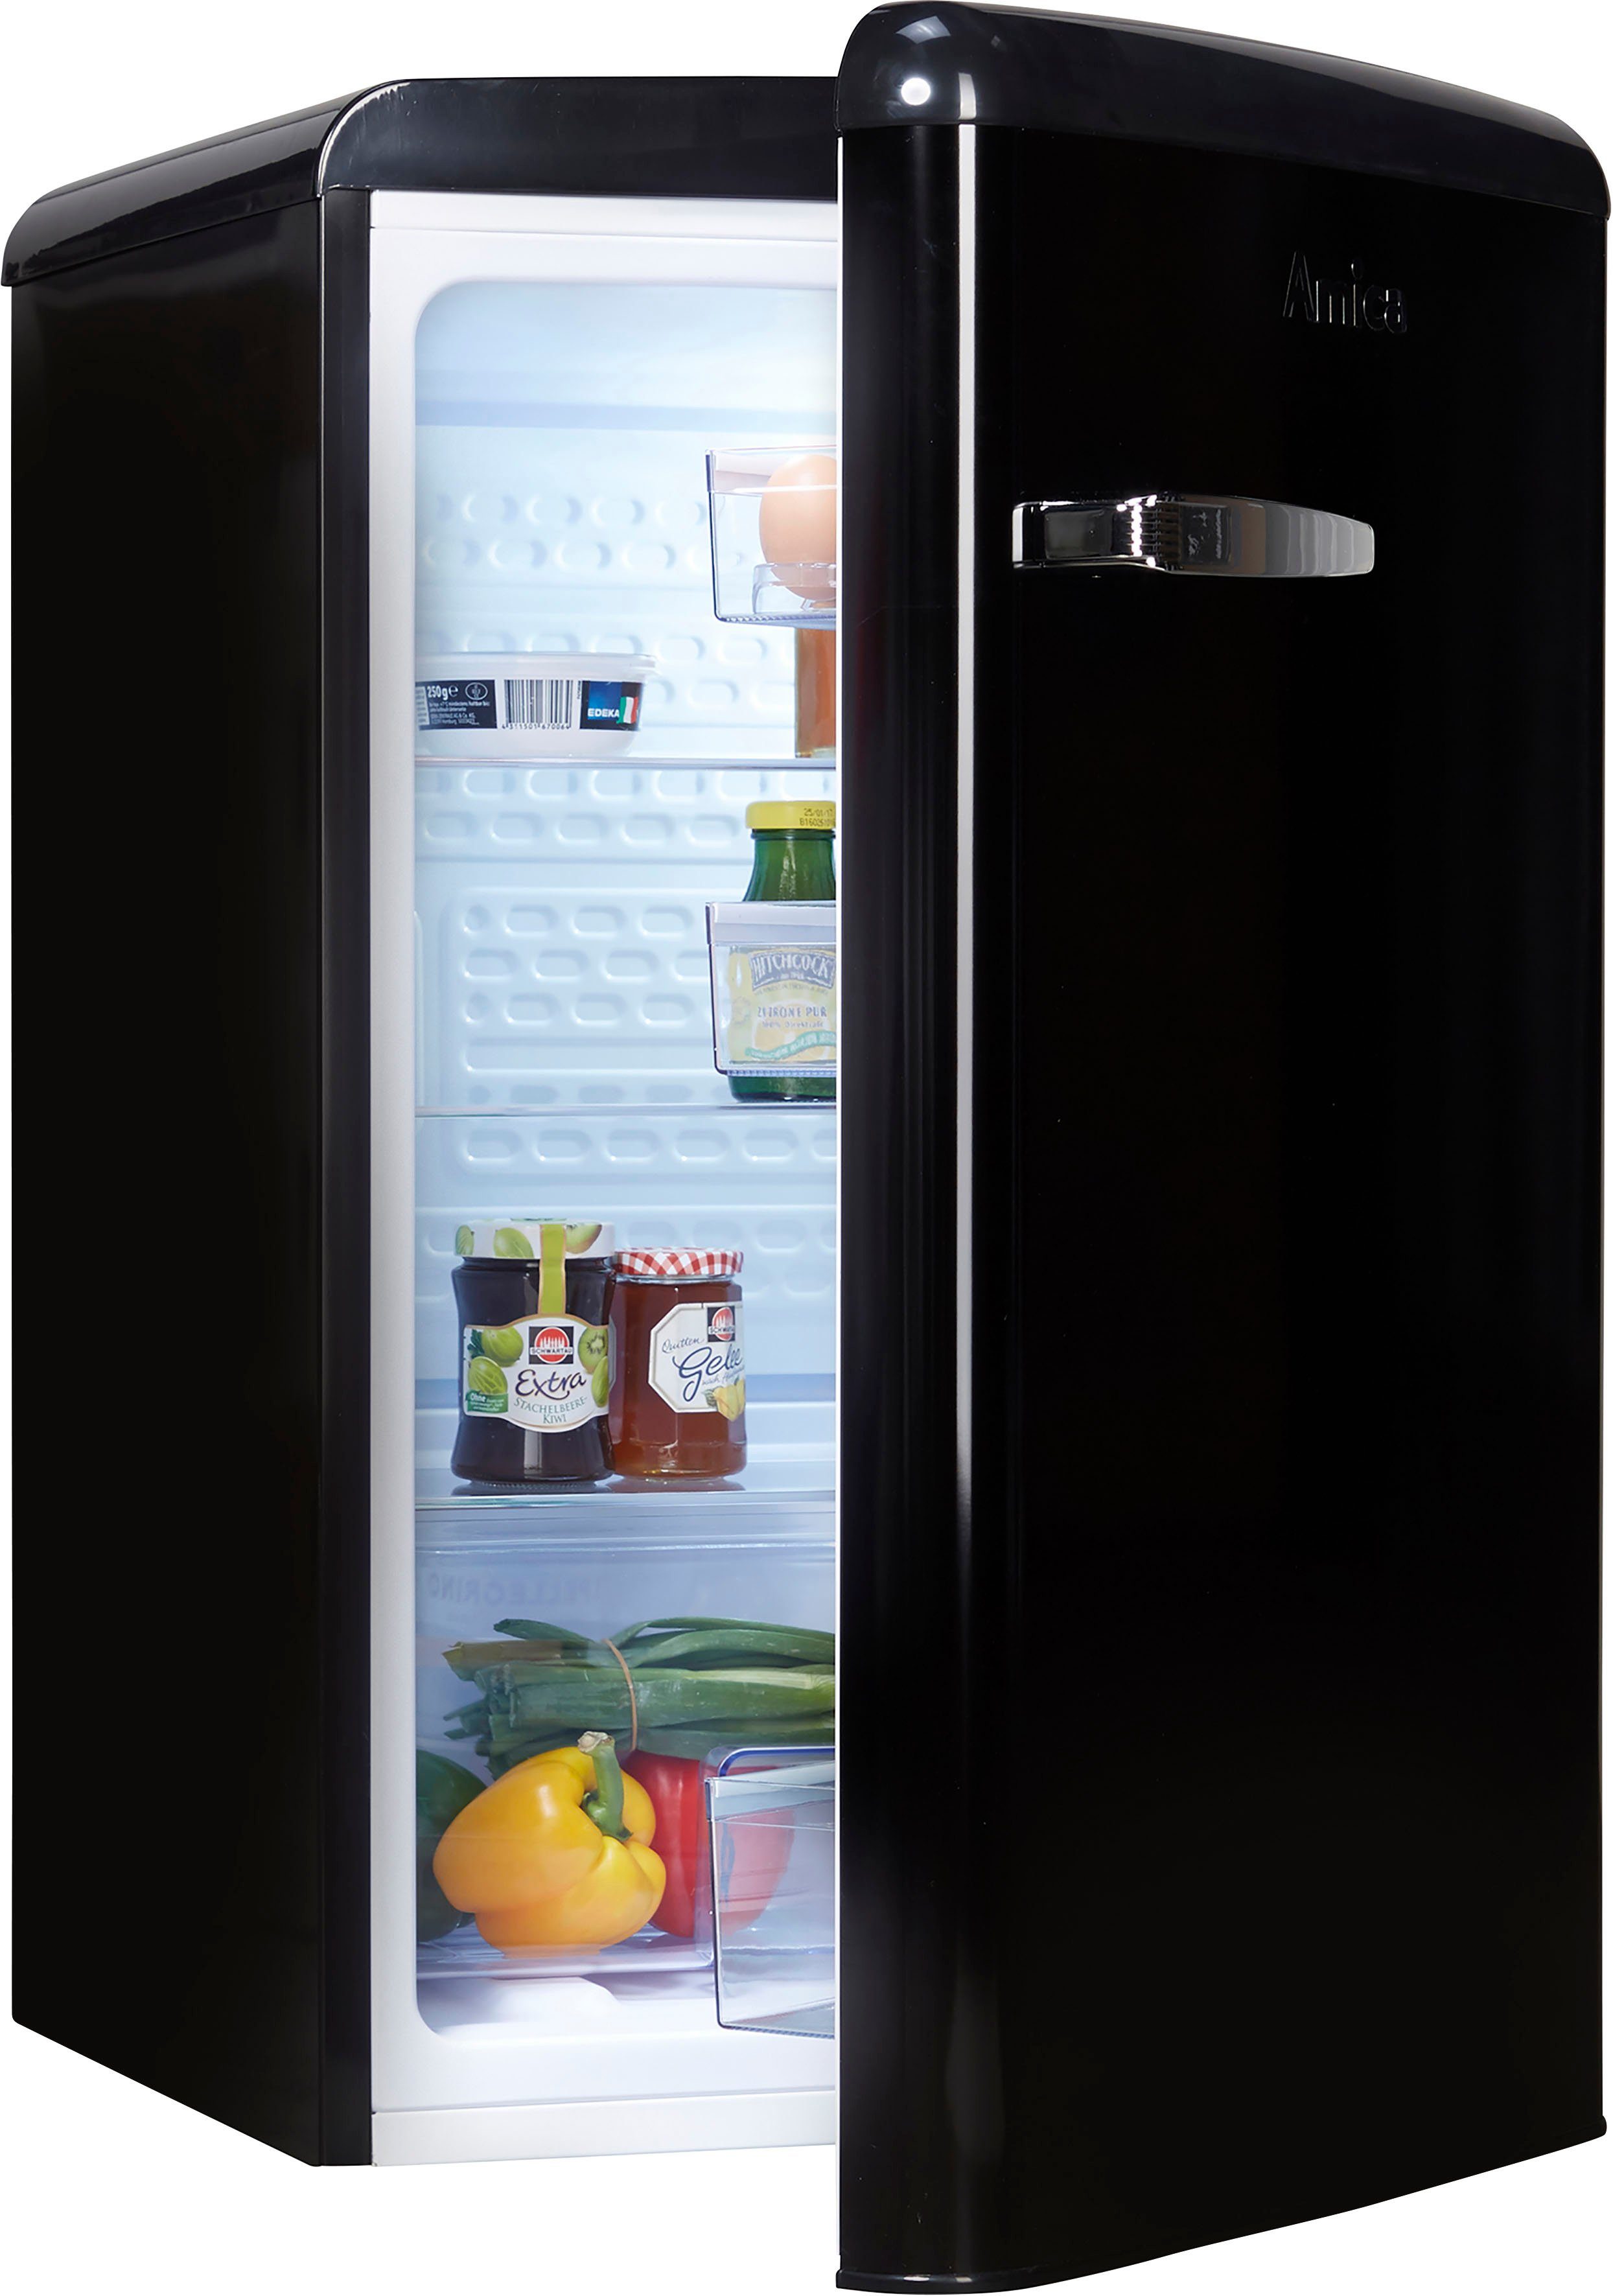 Amica Vollraumkühlschrank VKS 15620-1 R, 87,5 cm hoch, 55 cm breit,  Nutzinhalt gesamt 120 Liter | Retrokühlschränke